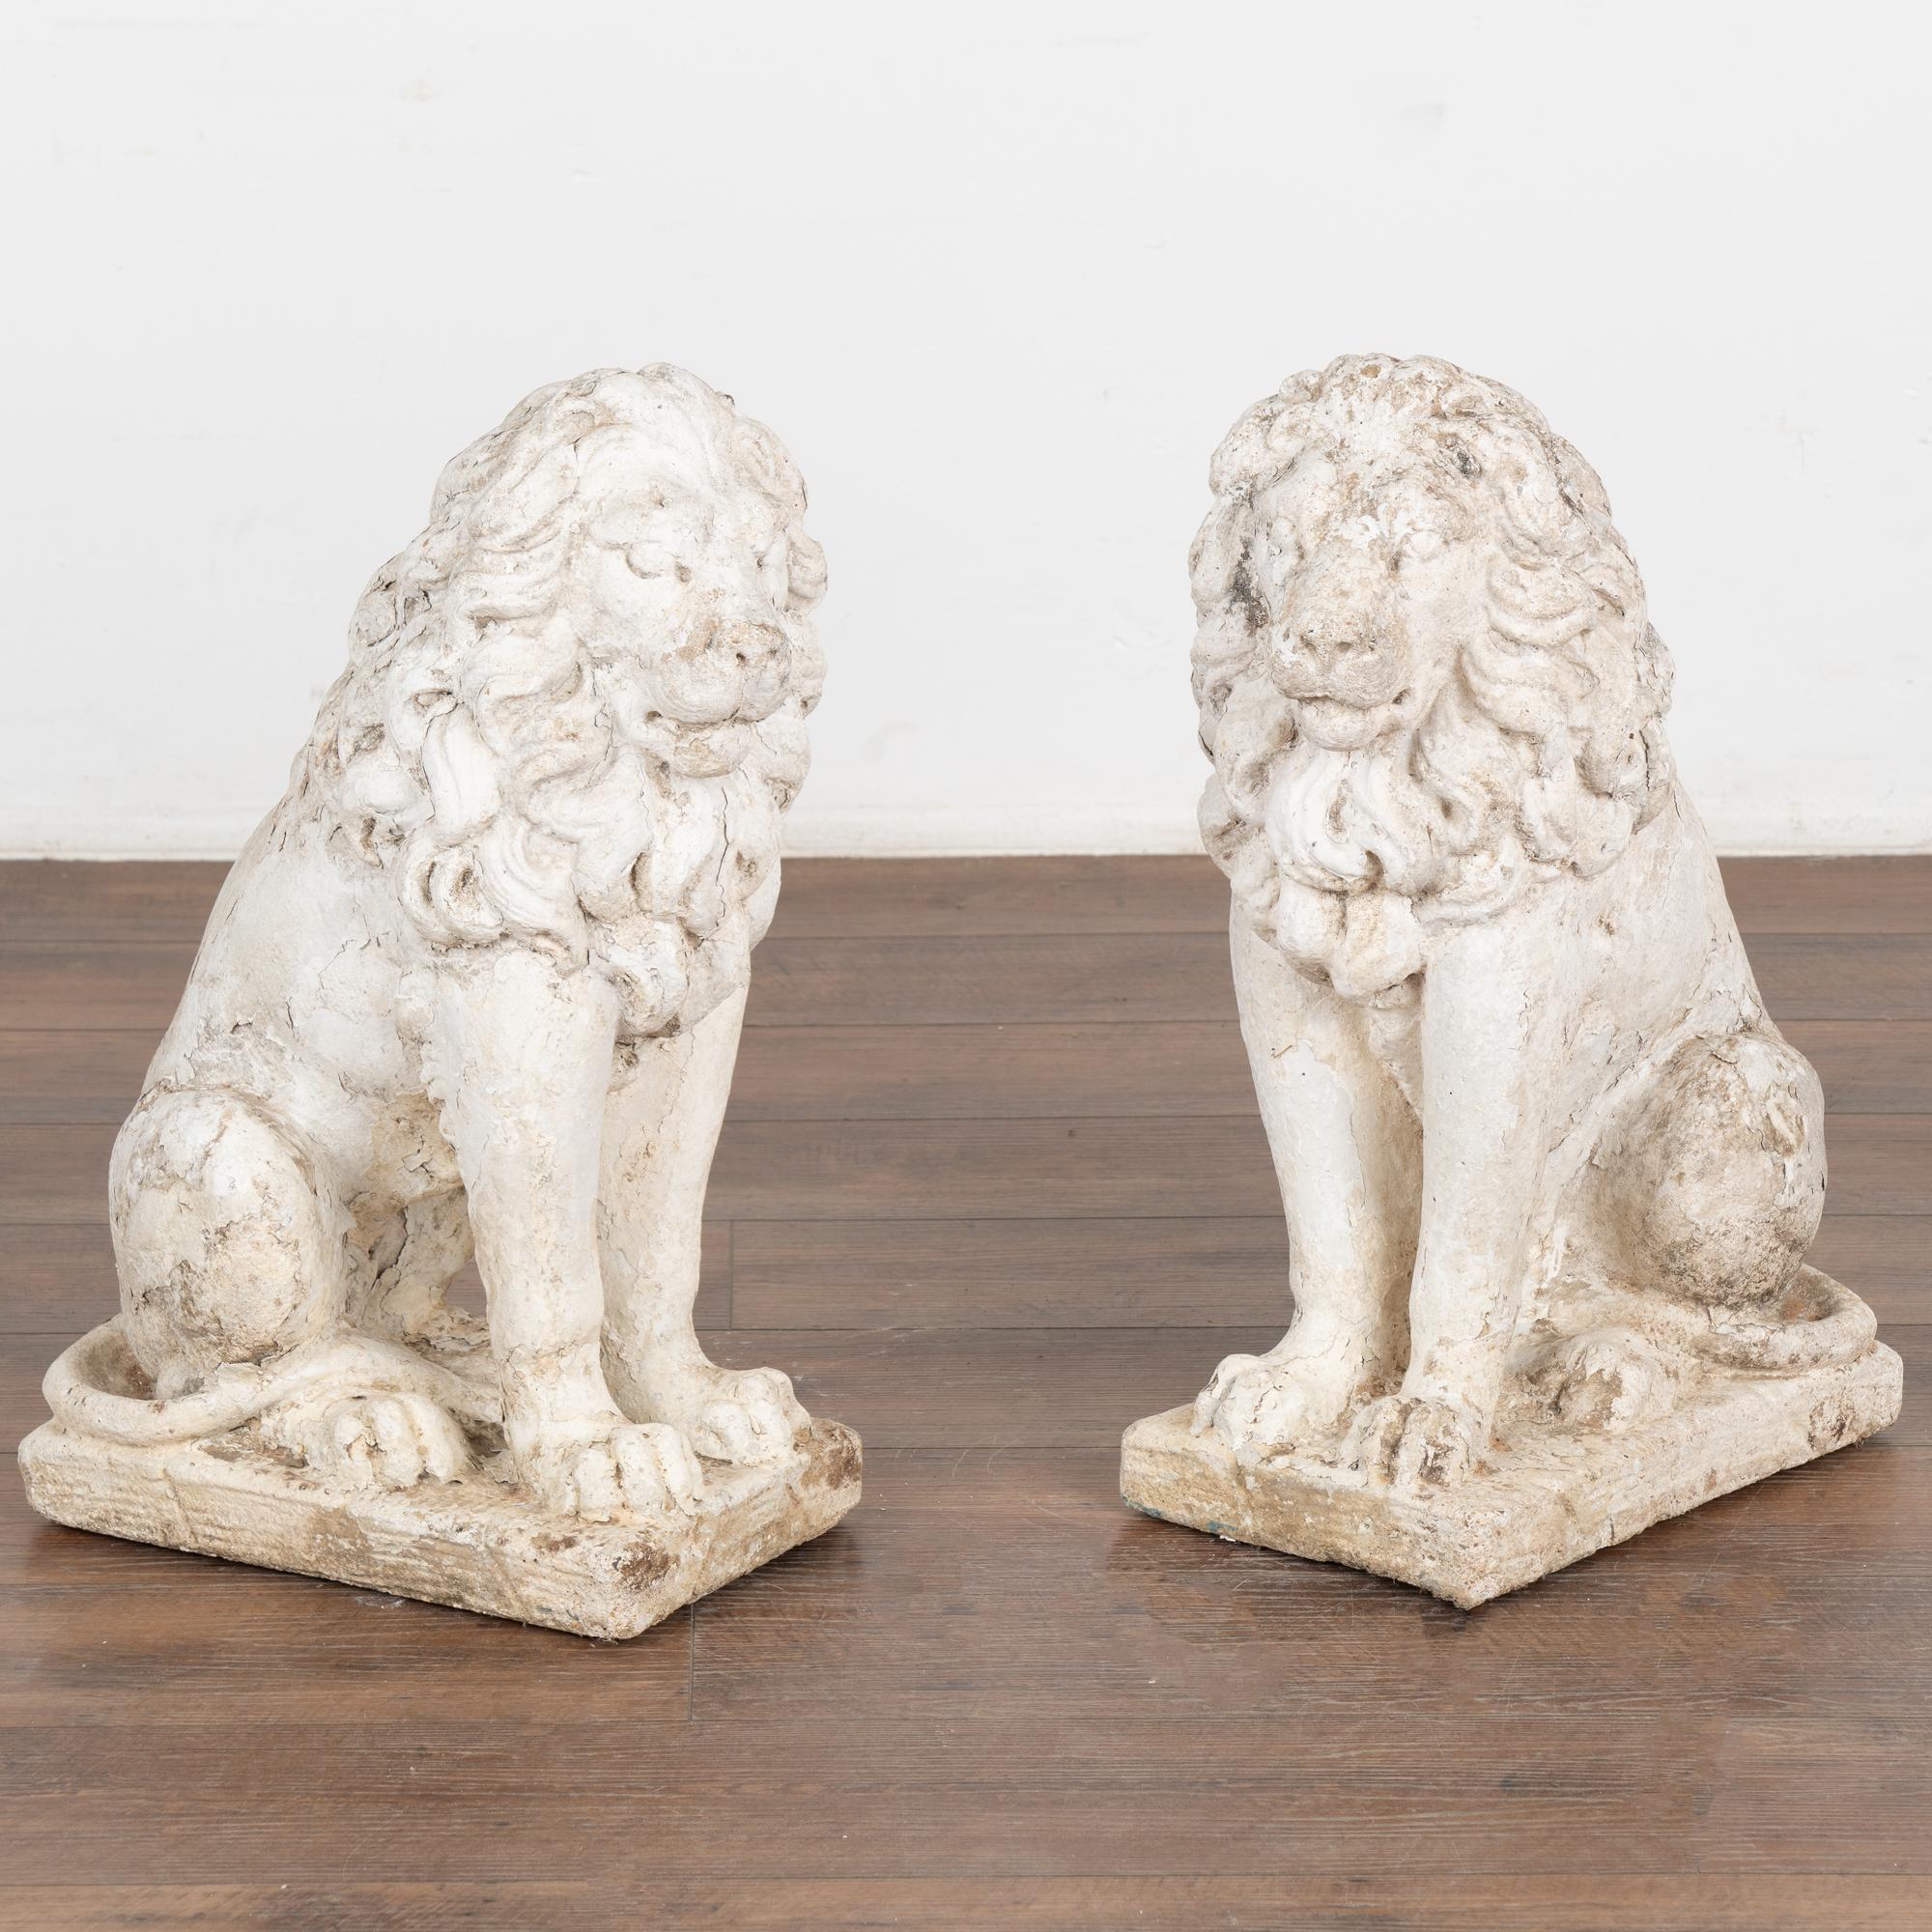 Paire, statues de lion sculptées dans la pierre calcaire et peintes en blanc. Les lions mâles à la crinière impressionnante sont en position assise.
La patine vieillie, y compris la dégradation de la finition, l'usure, le lichen, les taches, les